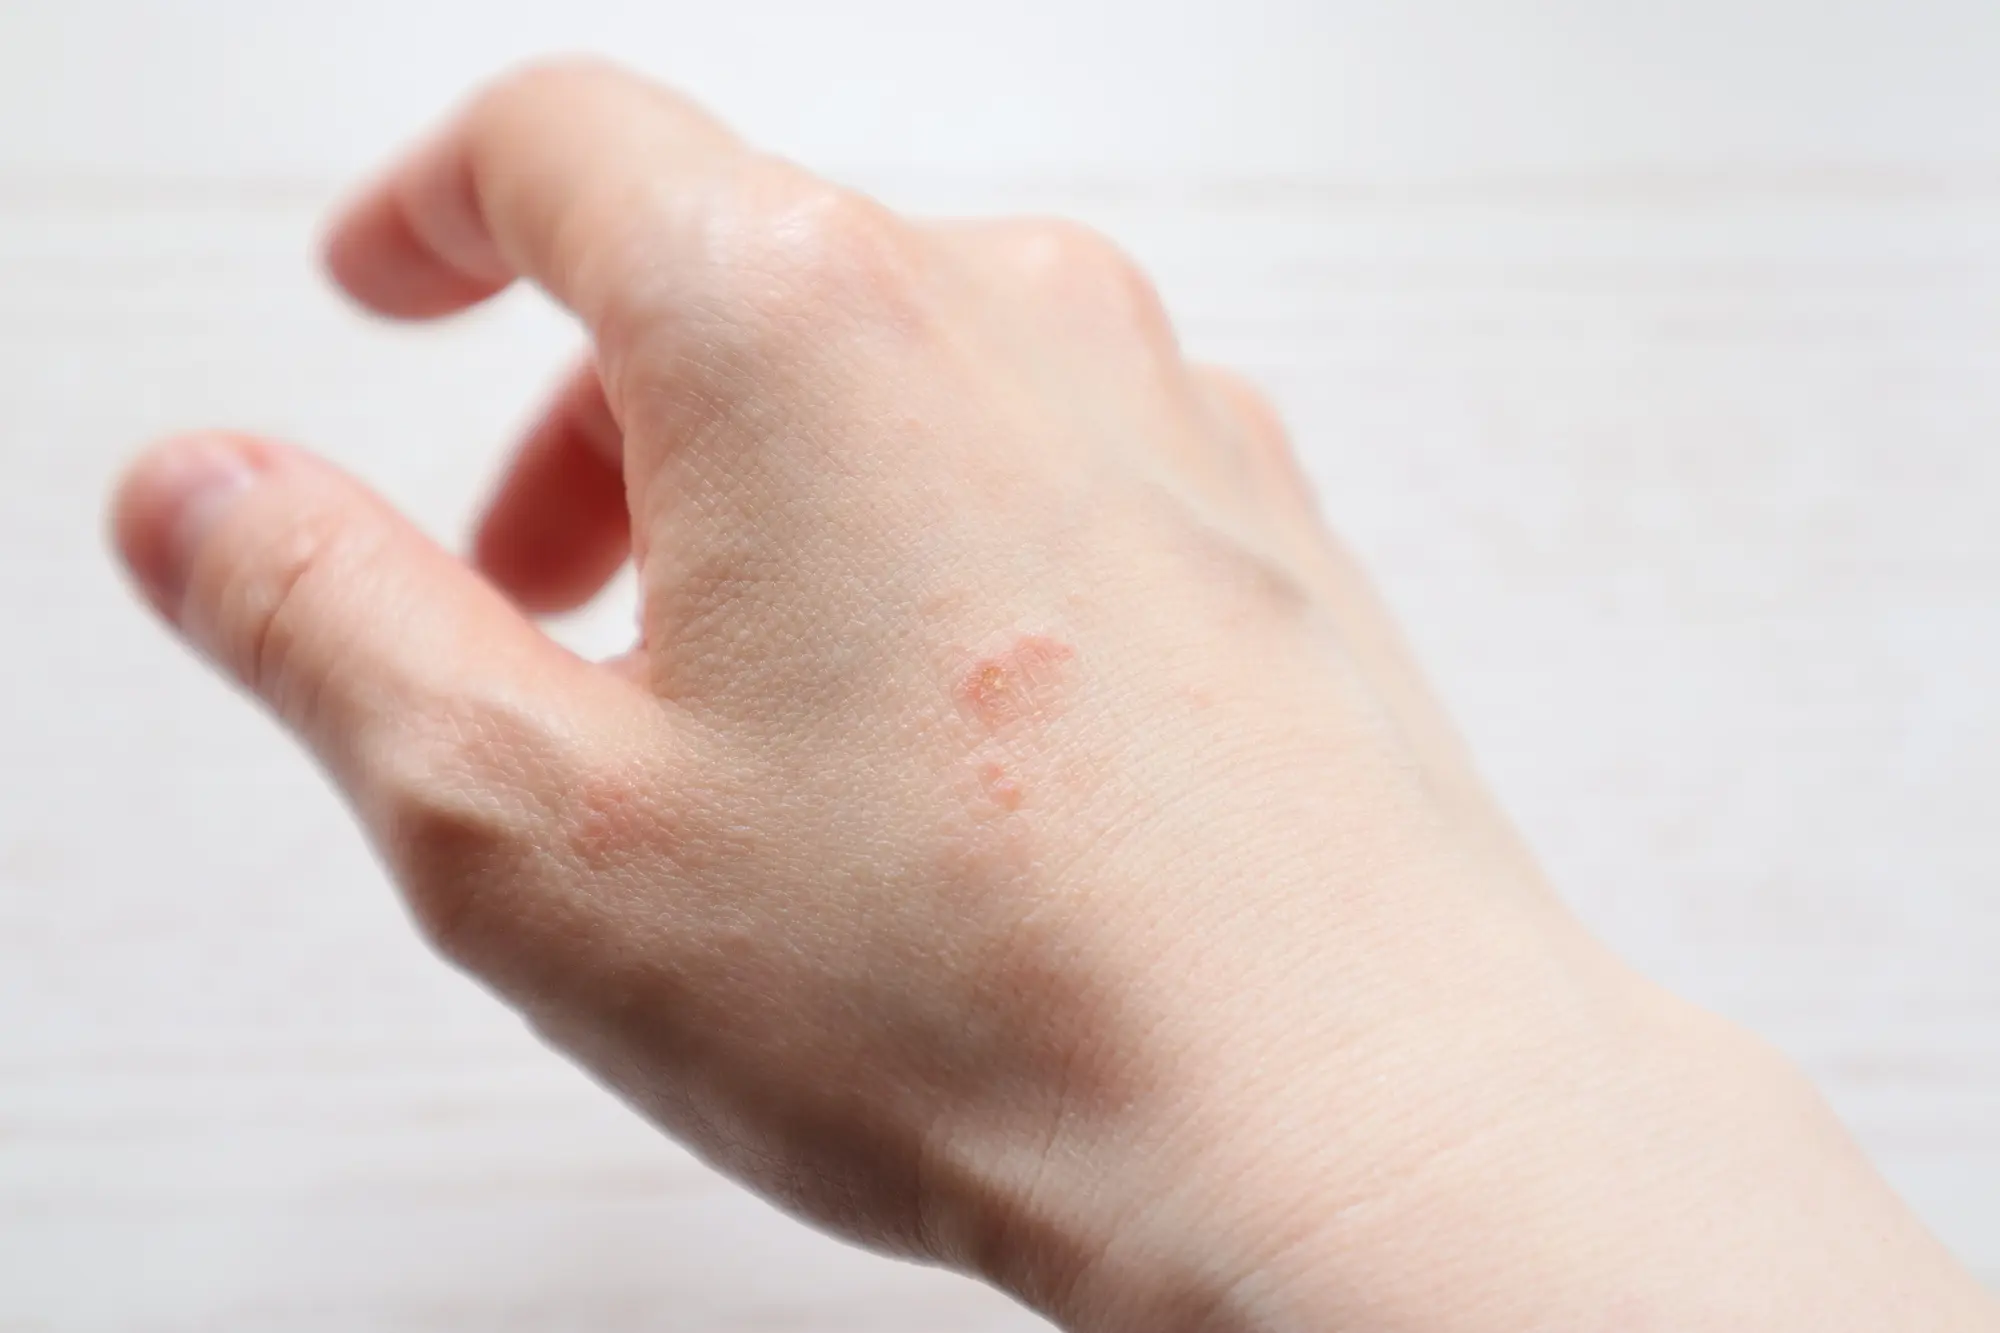 あさぶ皮フ科クリニックは札幌市の麻生にある皮膚科・美容皮膚科・皮膚外科・小児皮膚科です。Webからの予約が可能です。どんな些細なことでも皮膚症状でお悩みならお気軽にご相談ください。